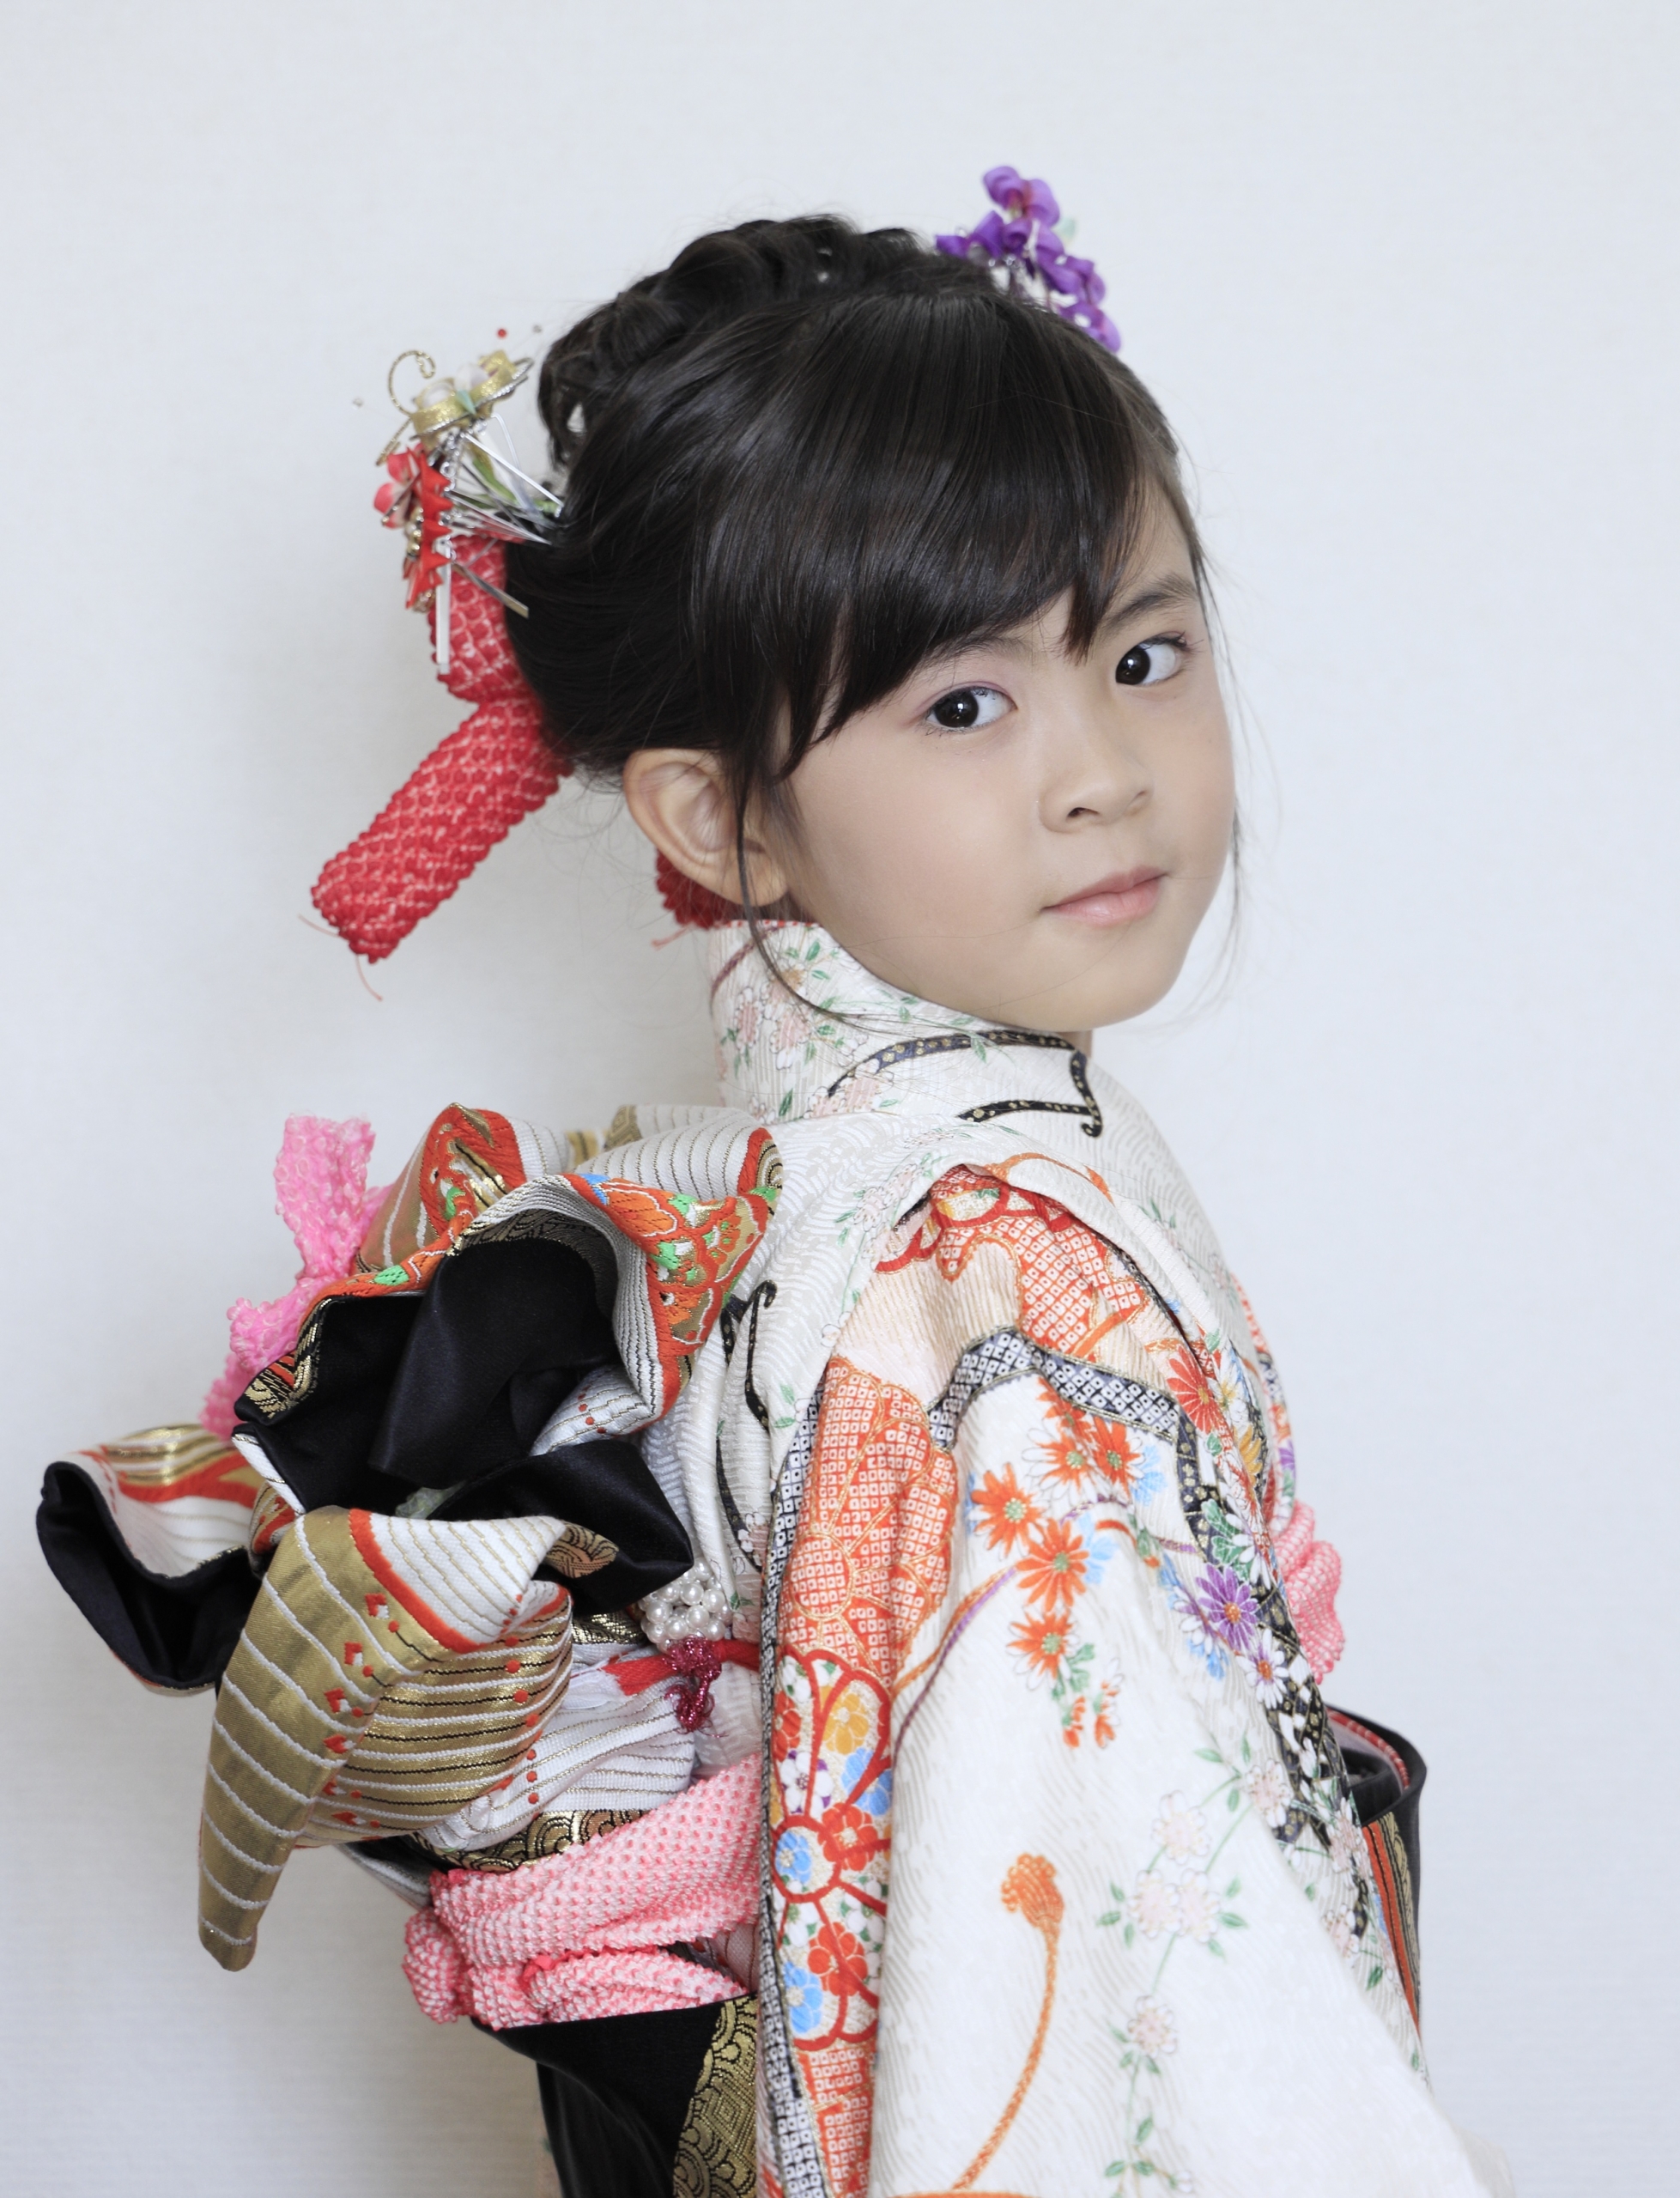 Khi các bé gái Nhật lên 7 tuổi, các em sẽ được mặc kimono và cử hành “nghi thức thay đai”, điều này có nghĩa là bé gái đã có khả năng hành động độc lập. (Ảnh: Shutterstock)